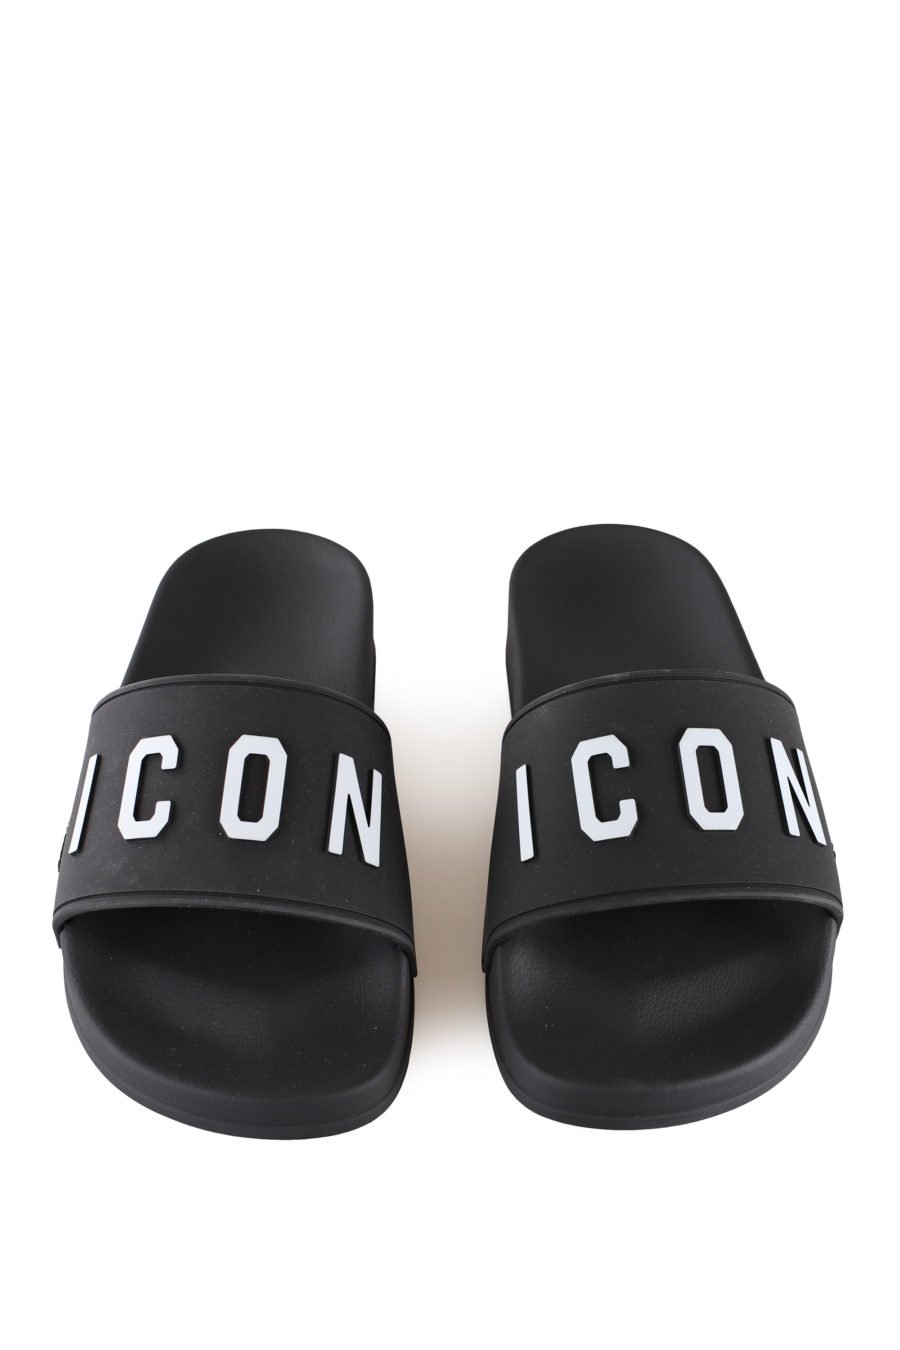 Black flip flops with white "icon" logo - IMG 0042